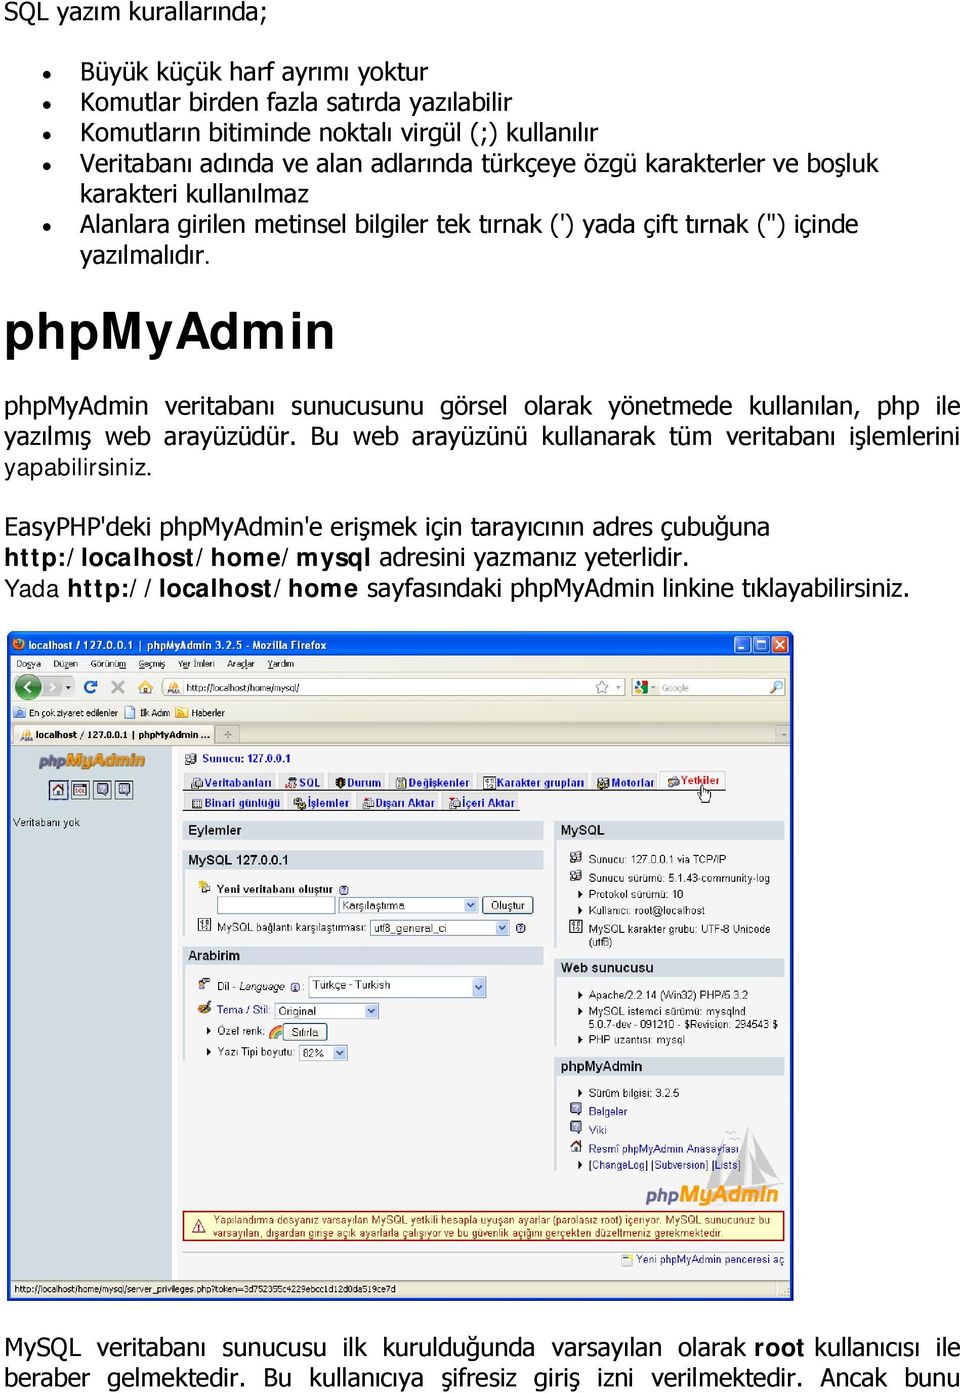 phpmyadmin phpmyadmin veritabanı sunucusunu görsel olarak yönetmede kullanılan, php ile yazılmış web arayüzüdür. Bu web arayüzünü kullanarak tüm veritabanı işlemlerini yapabilirsiniz.